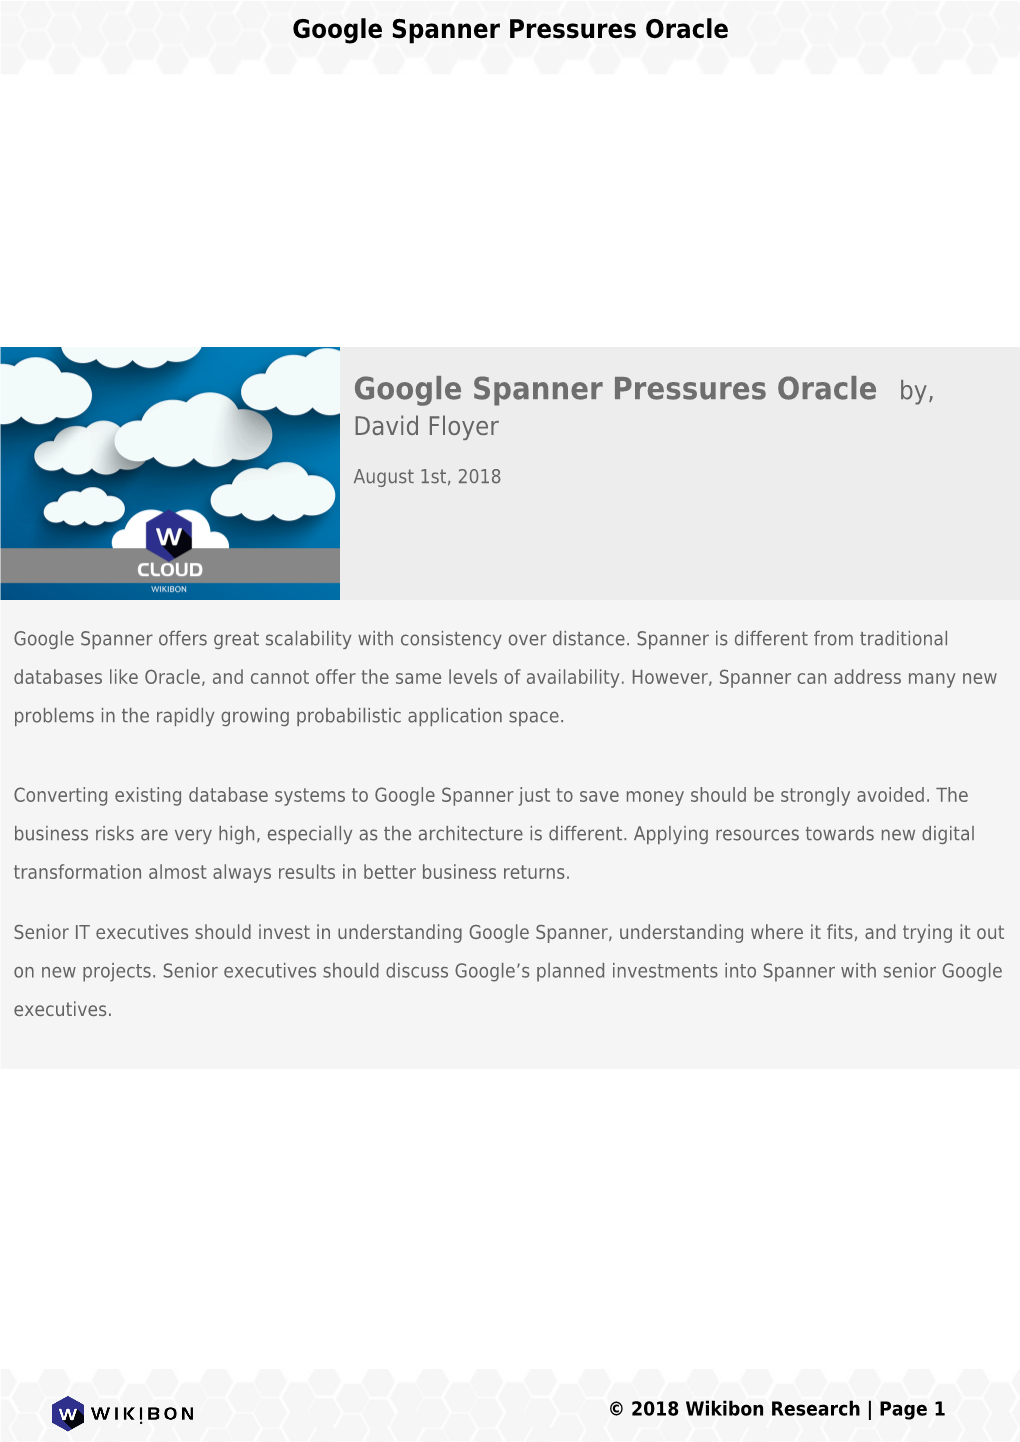 Google Spanner Pressures Oracle